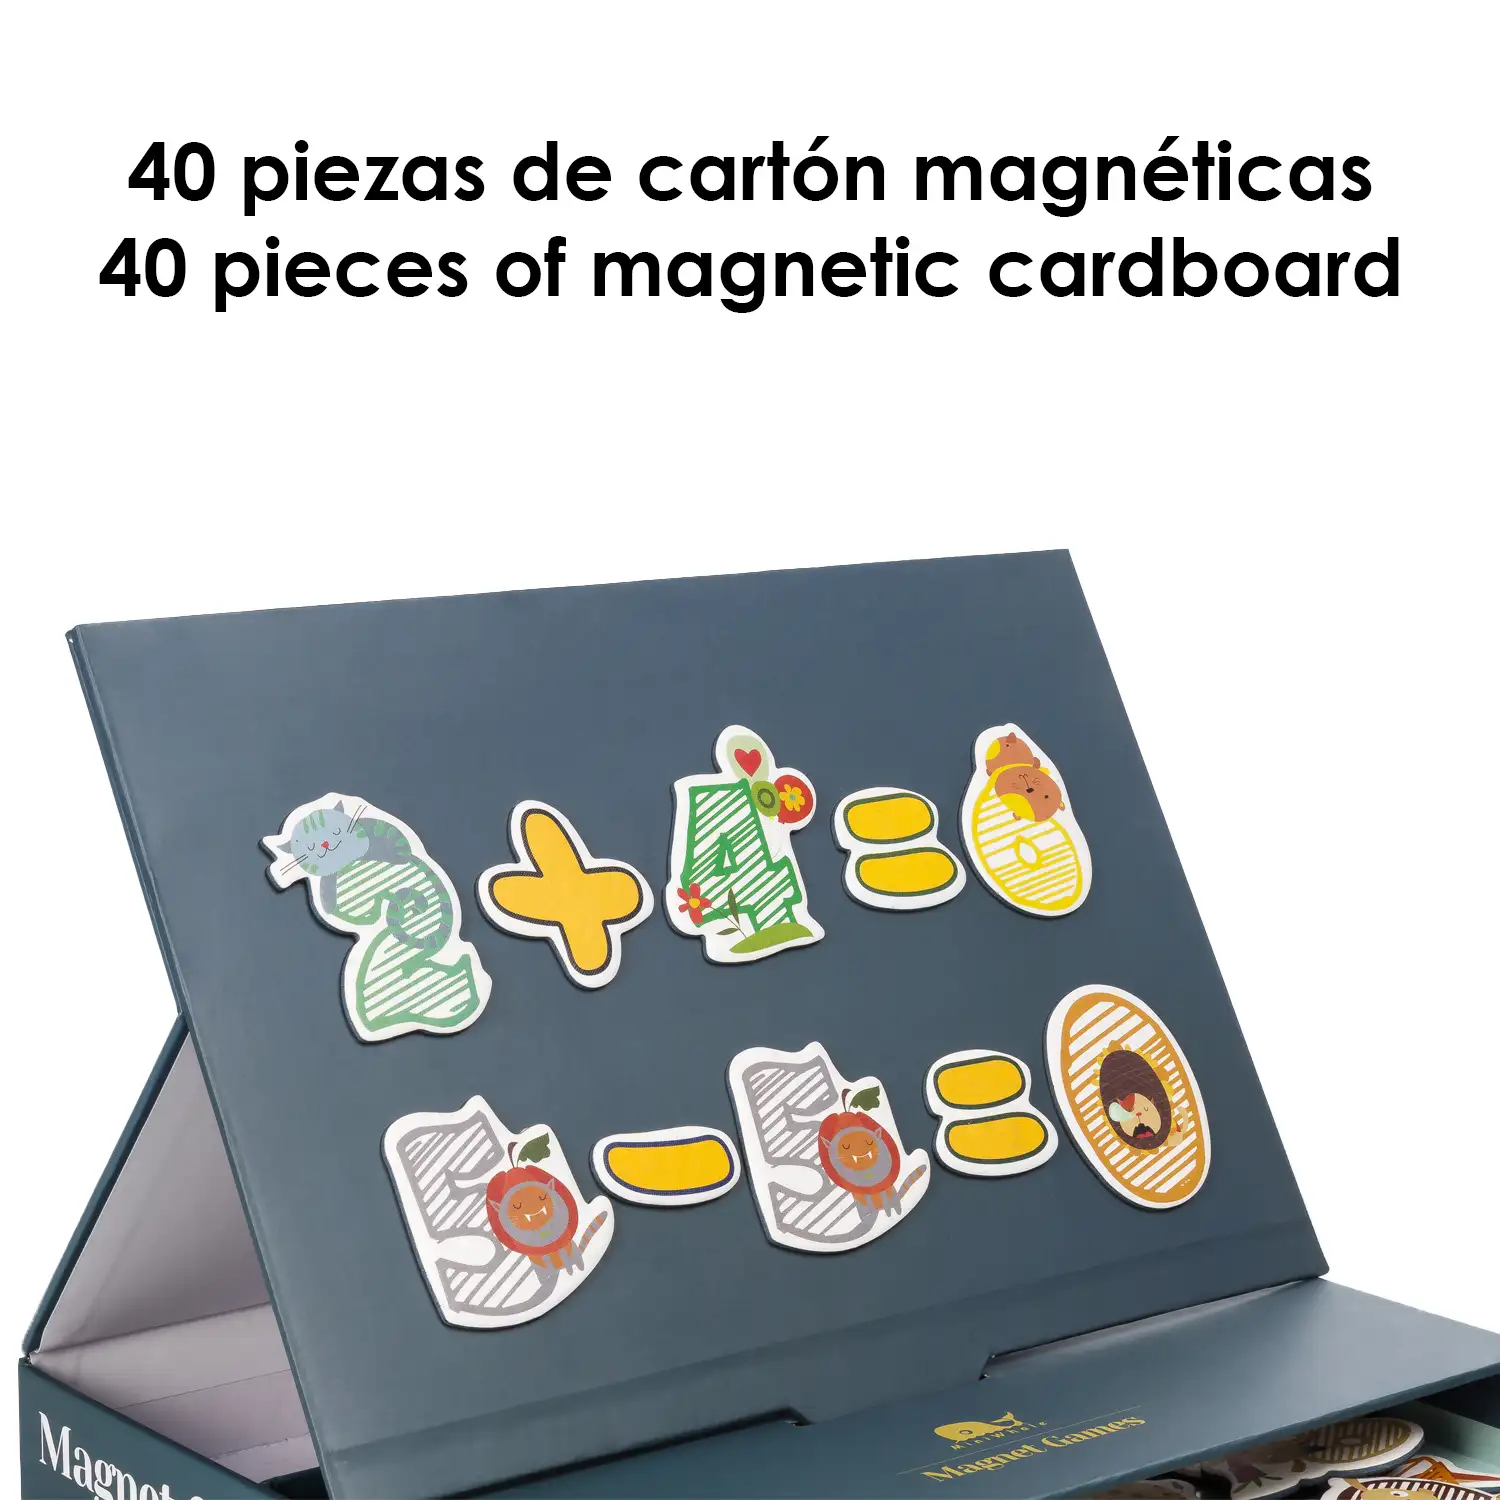 Juego magnético matemático. 40 piezas de cartón magnéticas con números y animales.